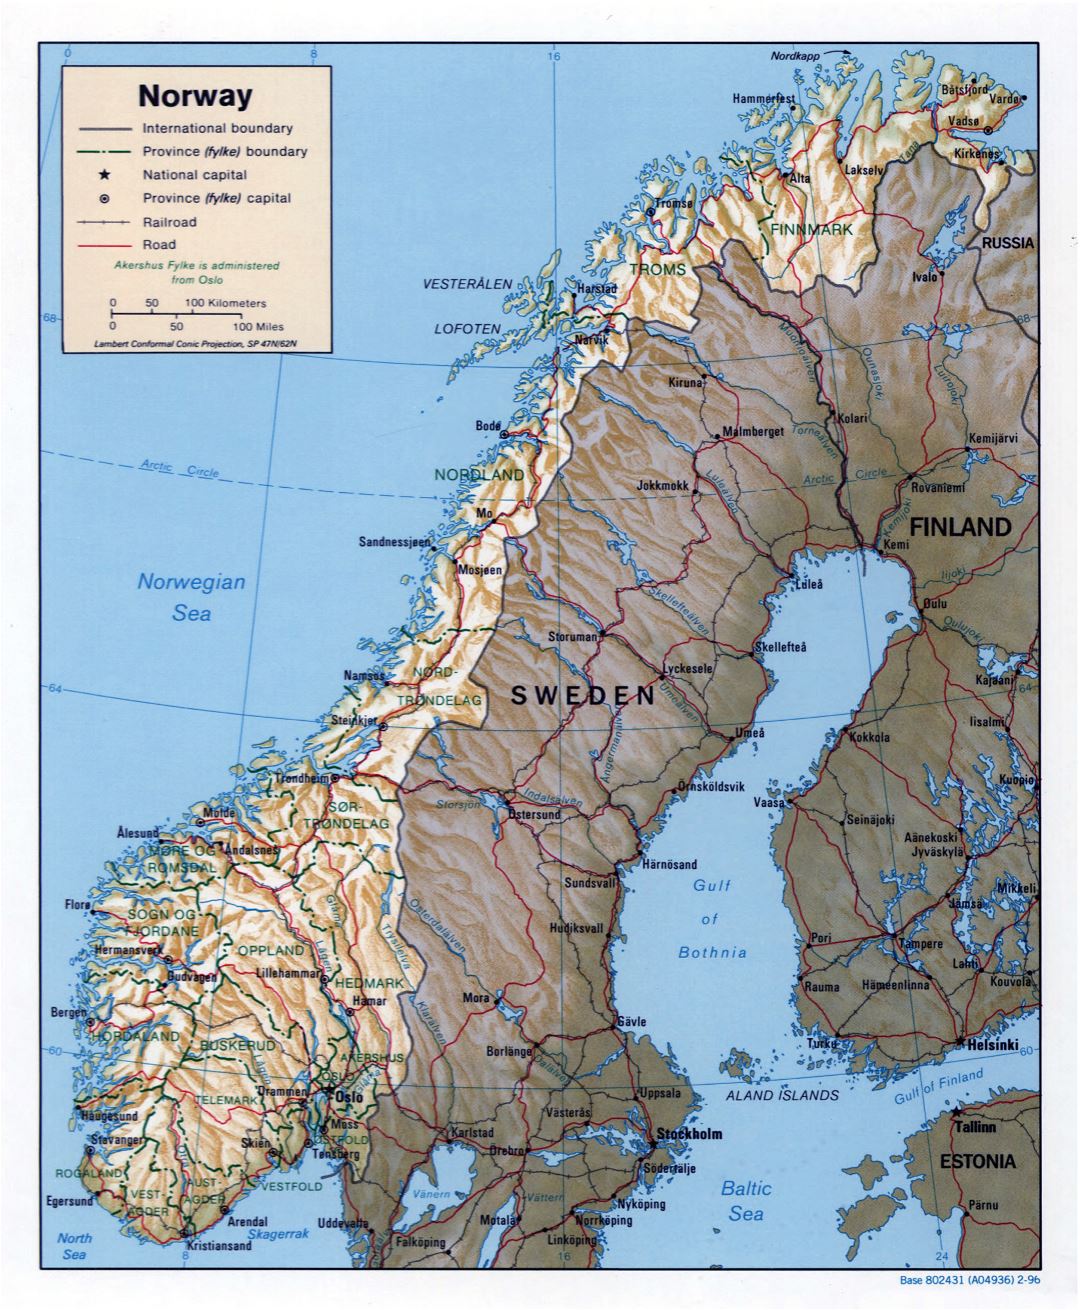 Grande detallado mapa política y administrativa de Noruega con alivio, carreteras y principales ciudades - 1996